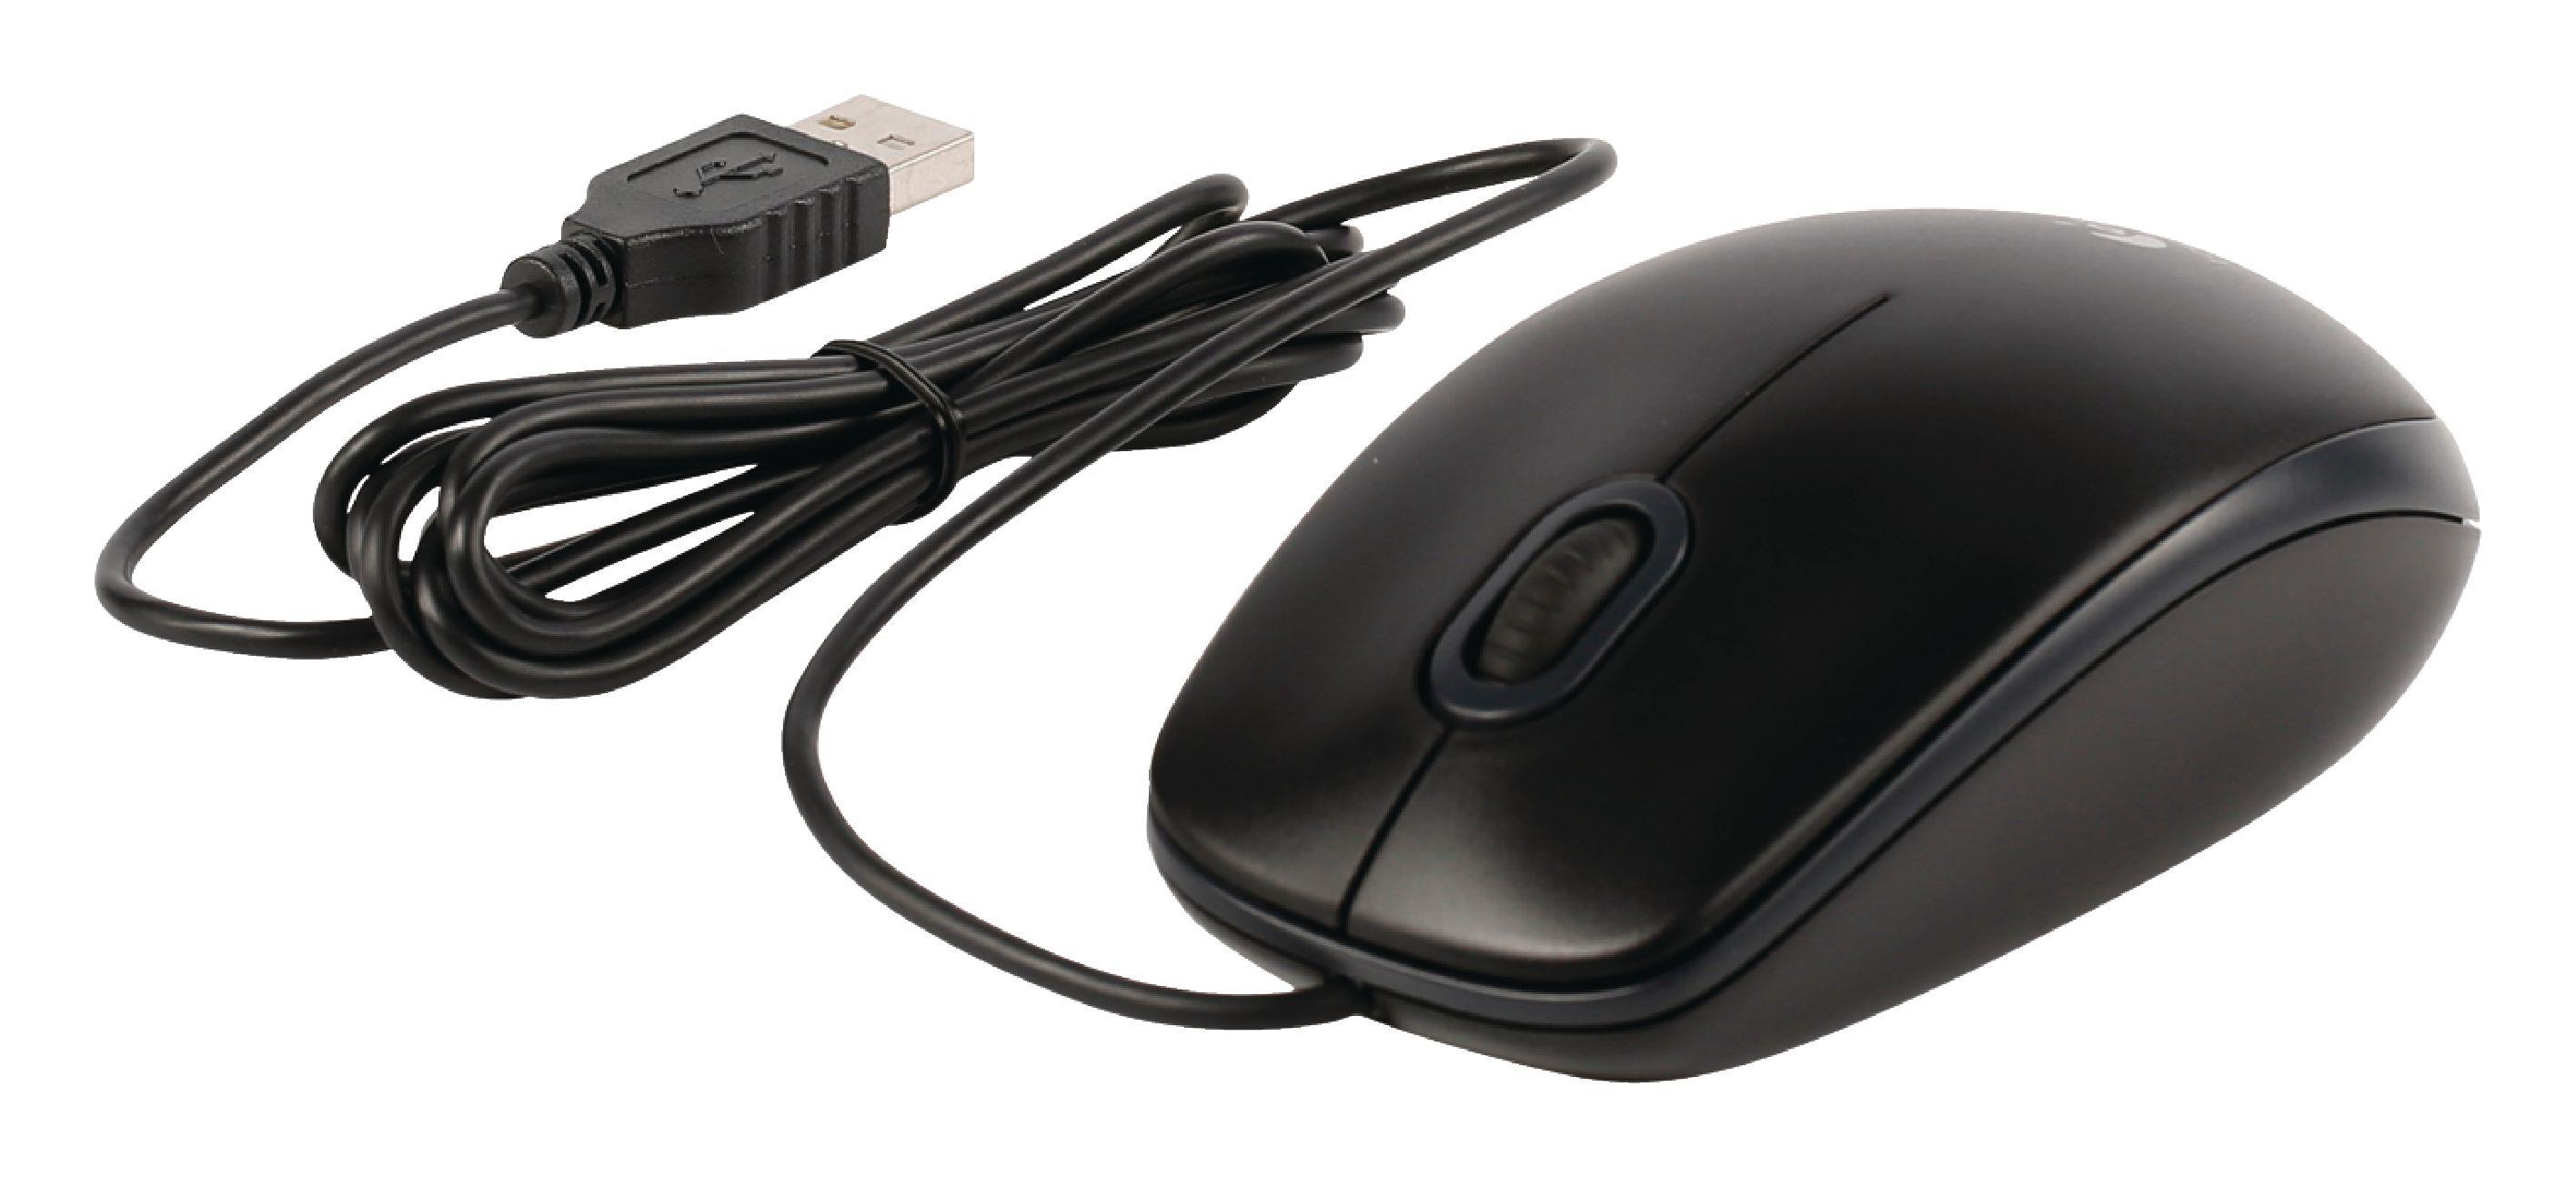 Mouse Logitech Optical B100   - USB